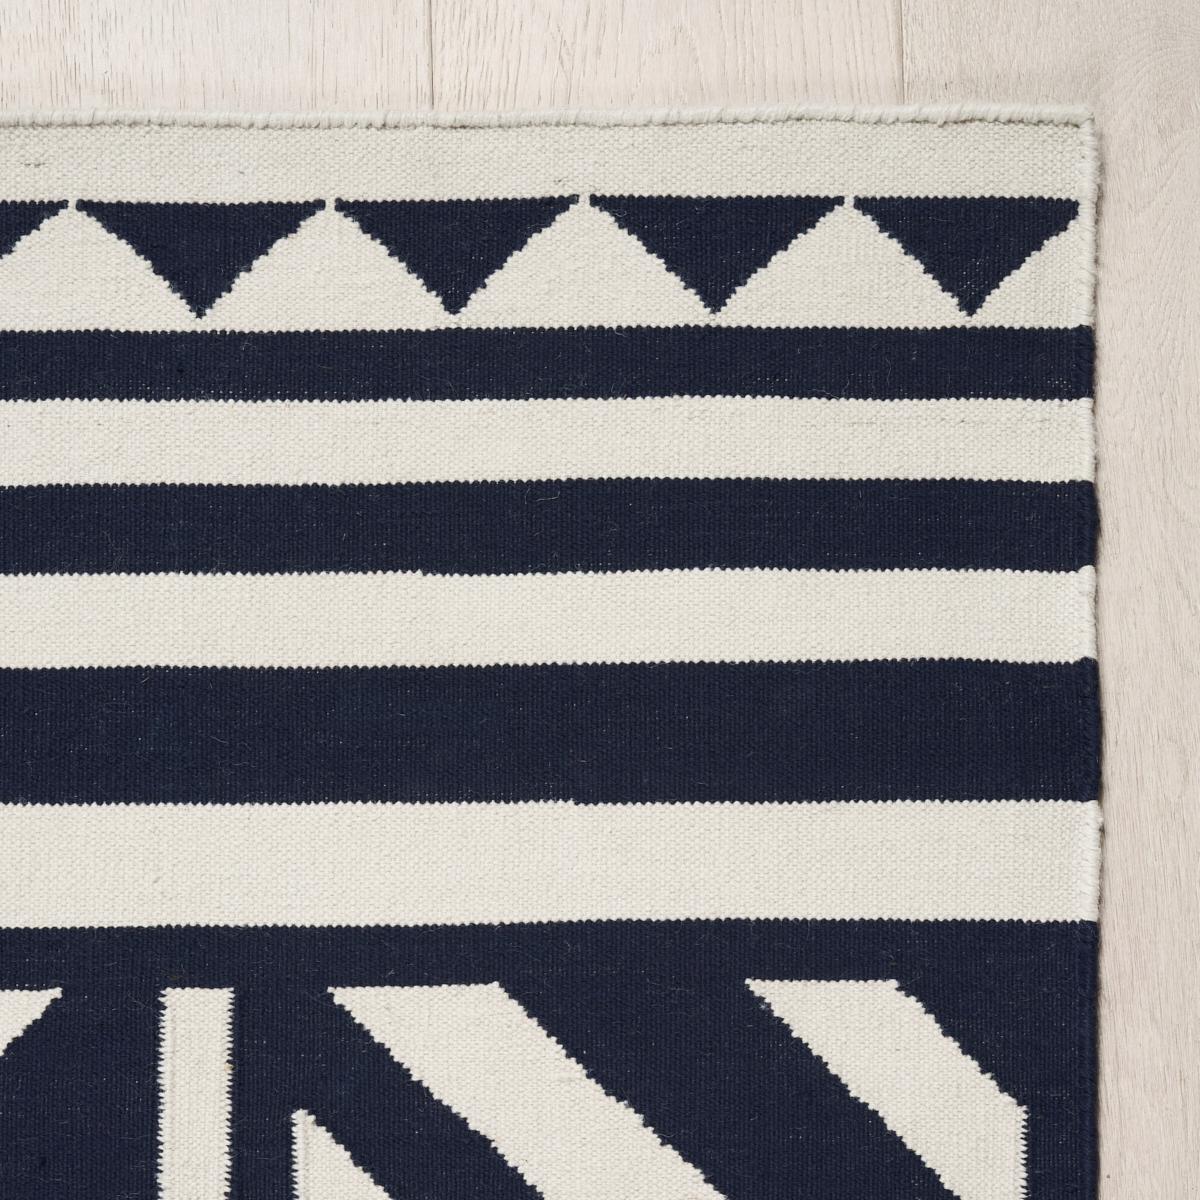 Eine auffällige Kombination aus geometrischen Mustern verleiht unserem Teppich Caravanne Indoor/Outdoor seinen einzigartigen Charakter und sein stilvolles Aussehen. Dieses strapazierfähige und pflegeleichte zweifarbige Flachgewebe besteht zu 100 %